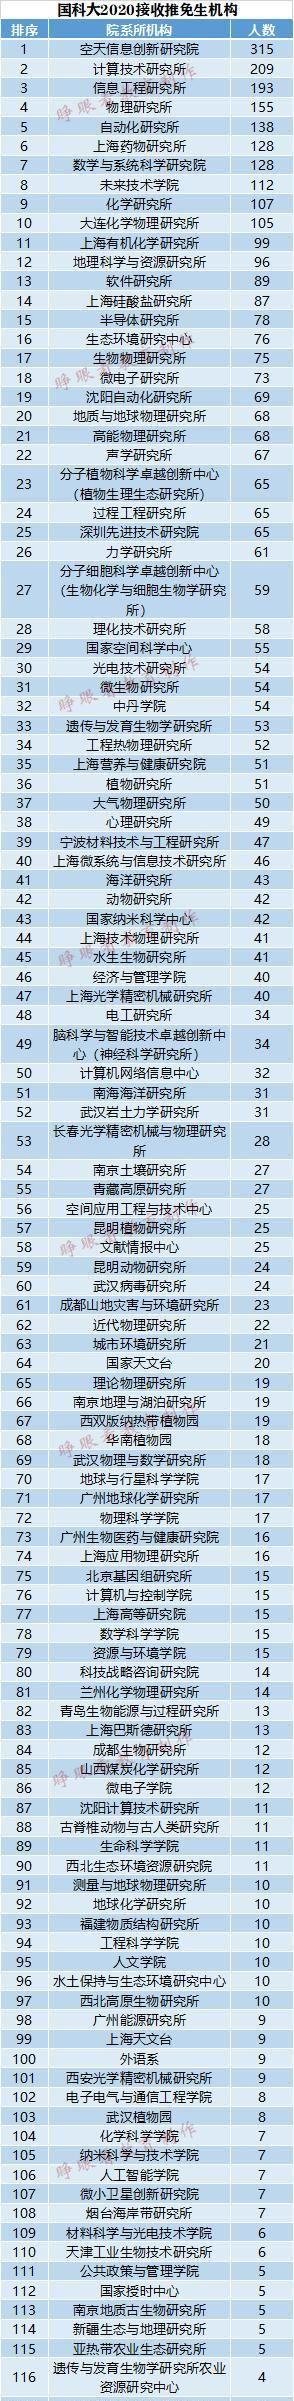 中国科学院大学2020拟录推免生4880人，哪个研究所录取人数最多